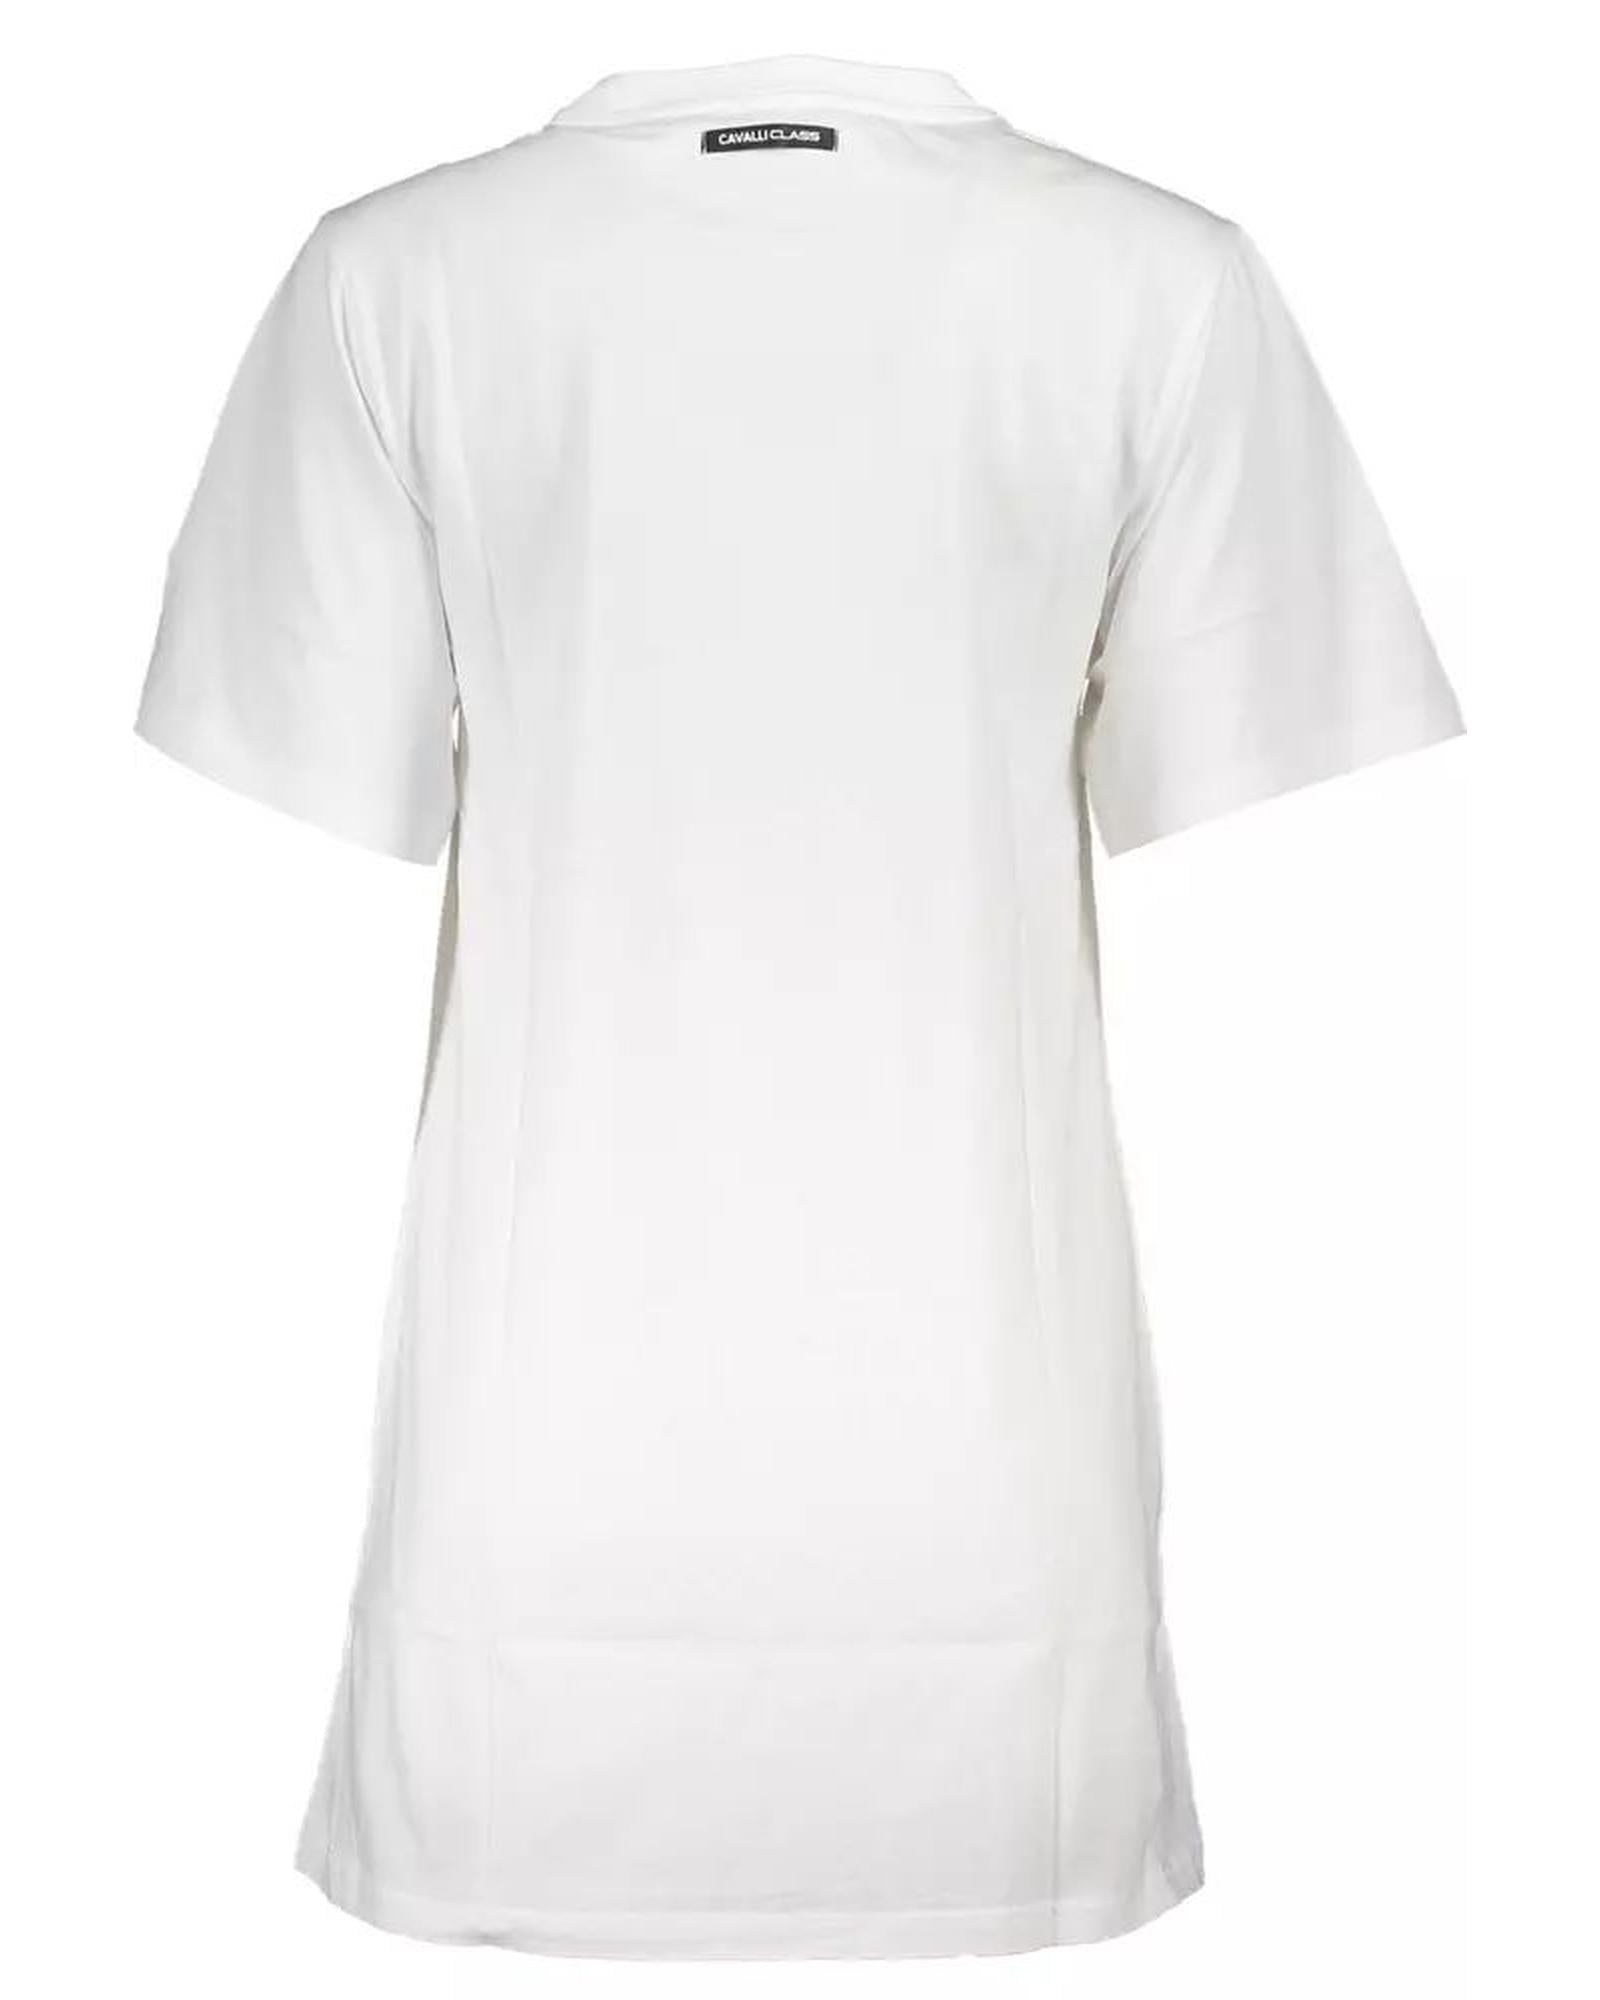 Women's White Cotton Dress - XL